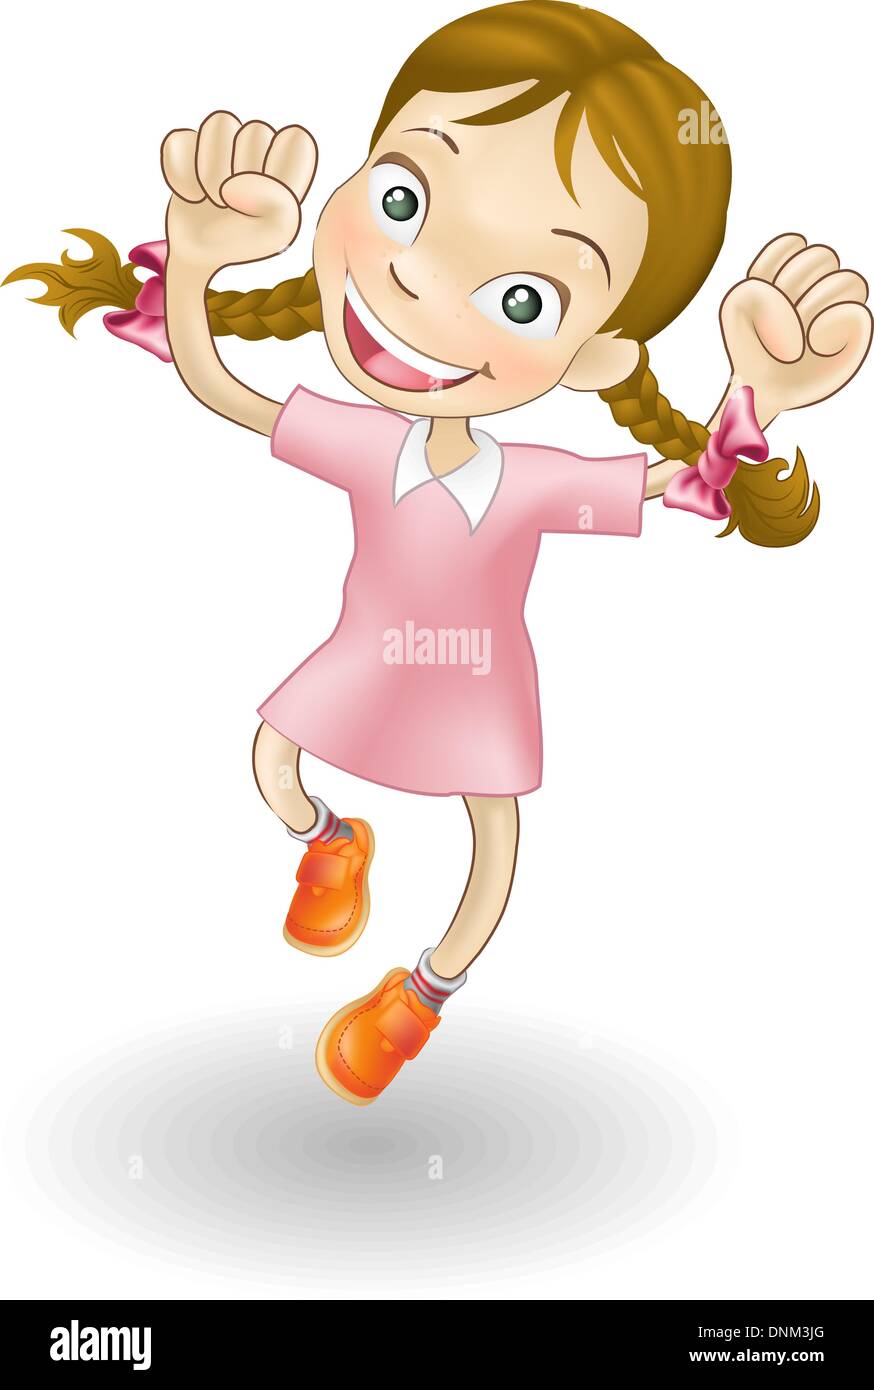 Eine Abbildung eines kaukasischen Mädchens springen vor Freude Stock Vektor